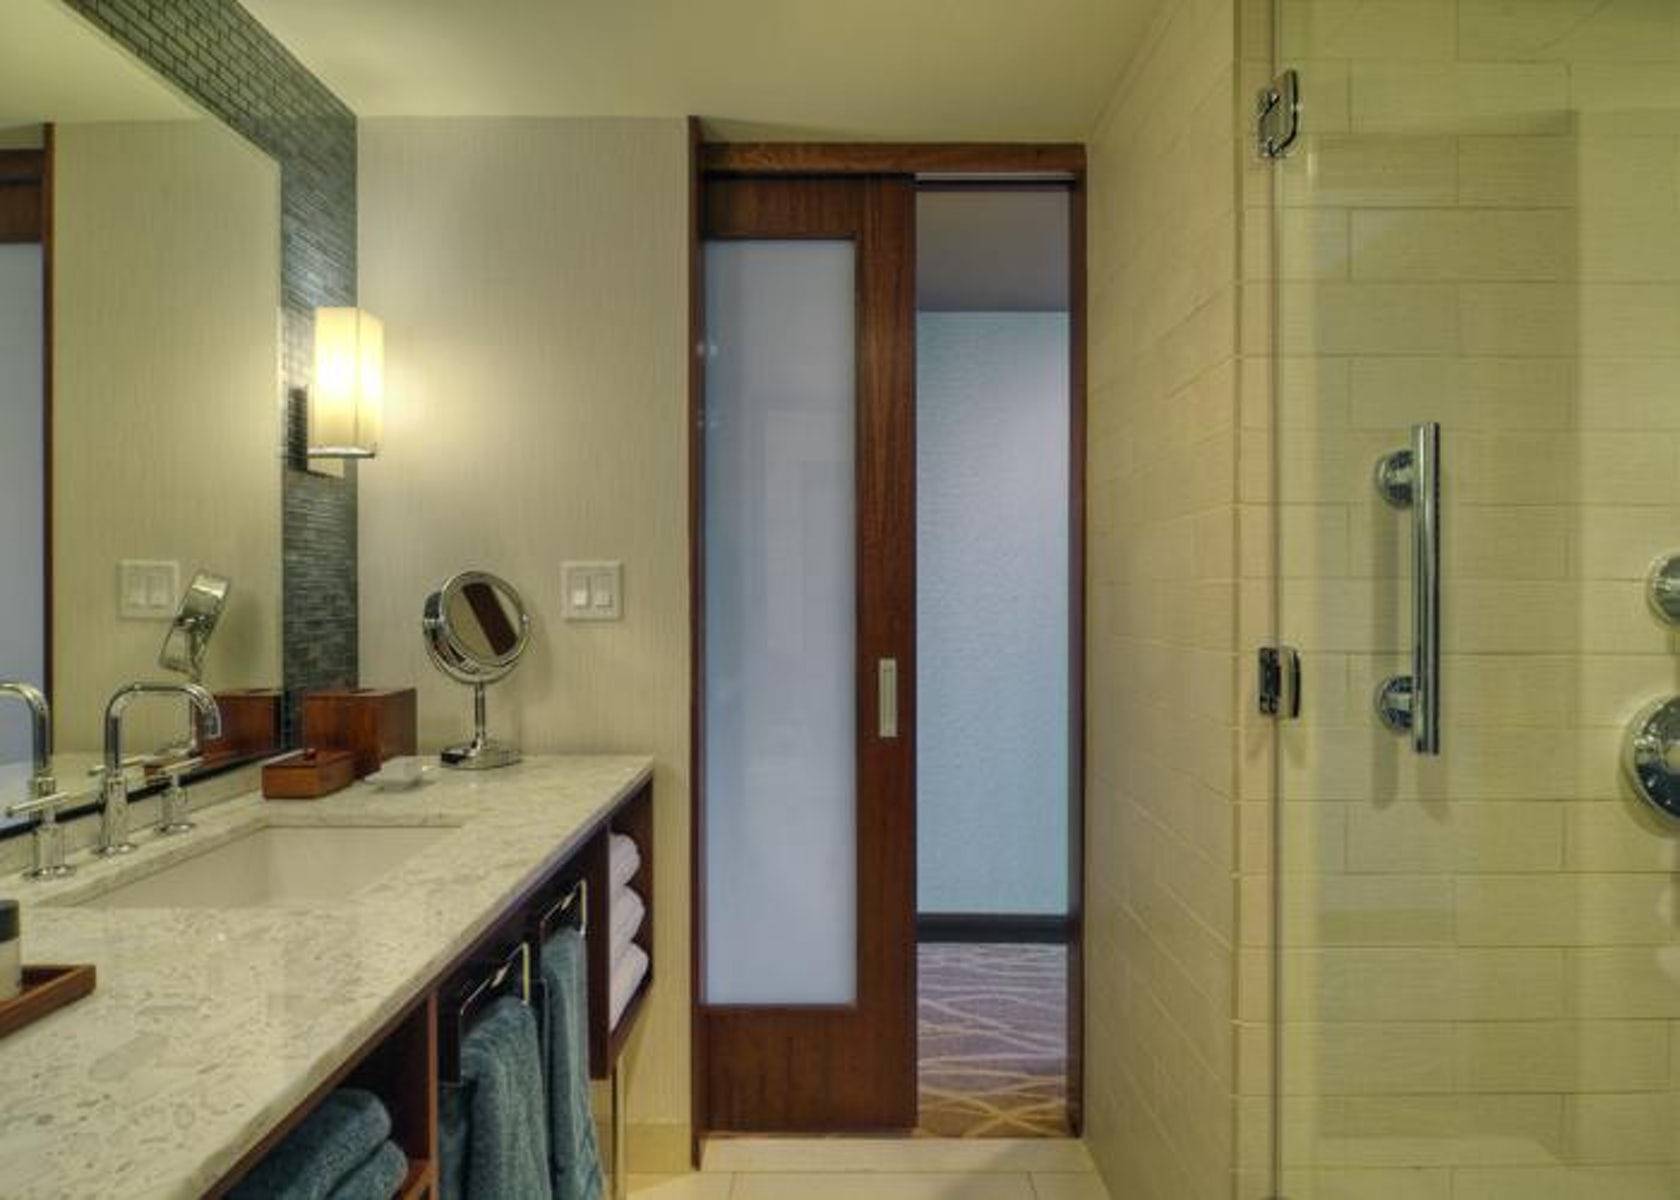 Скрытые двери в ванну. Раздвижные двери в ванную комнату. Раздвижная дверь в ванную. Откатная дверь в ванную комнату. Раздвижная дверь в санузел.